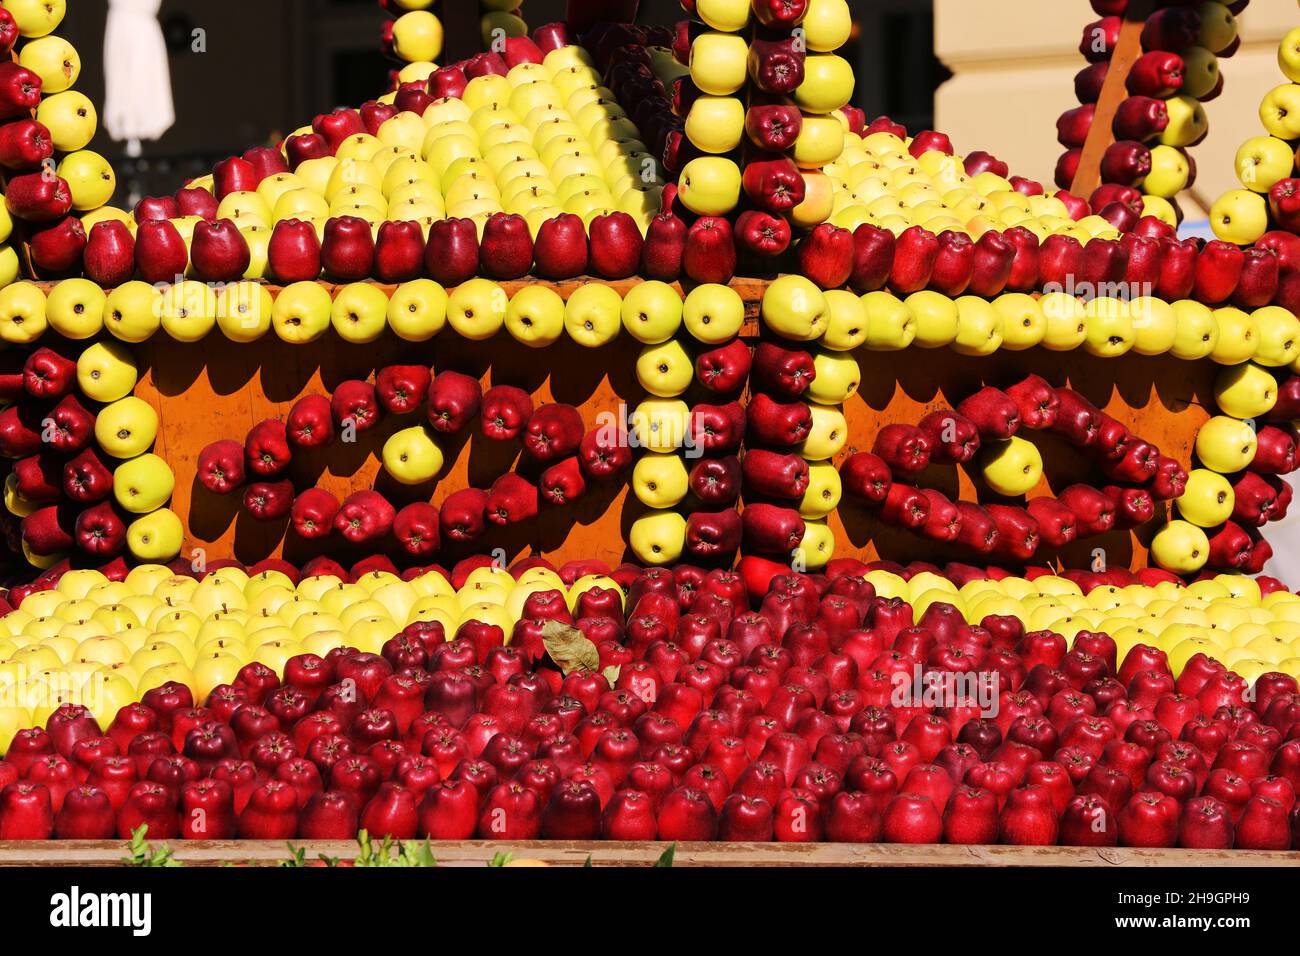 Apfel, Meran, Kurstadt, Weinfest, Trachtenfest, Krone, Äpfel dekoriert zum großen Fest in Südtirol, Italien. Stock Photo